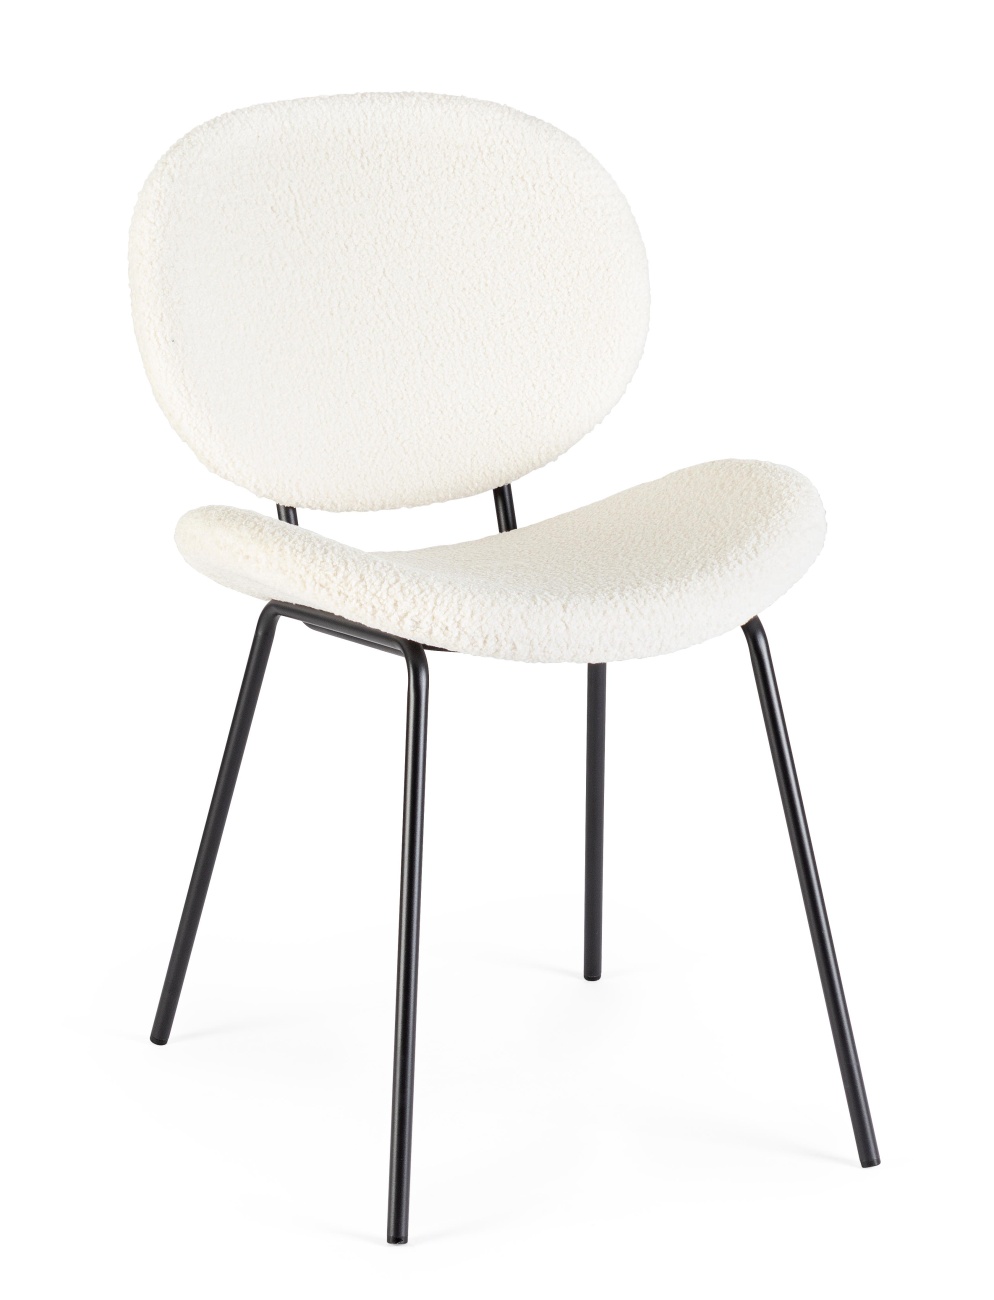 Der Esszimmerstuhl Maddie überzeugt mit seinem modernen Stil. Gefertigt wurde er aus Boucle-Stoff, welcher einen weißen Farbton besitzt. Das Gestell ist aus Metall und hat eine schwarze Farbe. Der Stuhl besitzt eine Sitzhöhe von 46 cm.